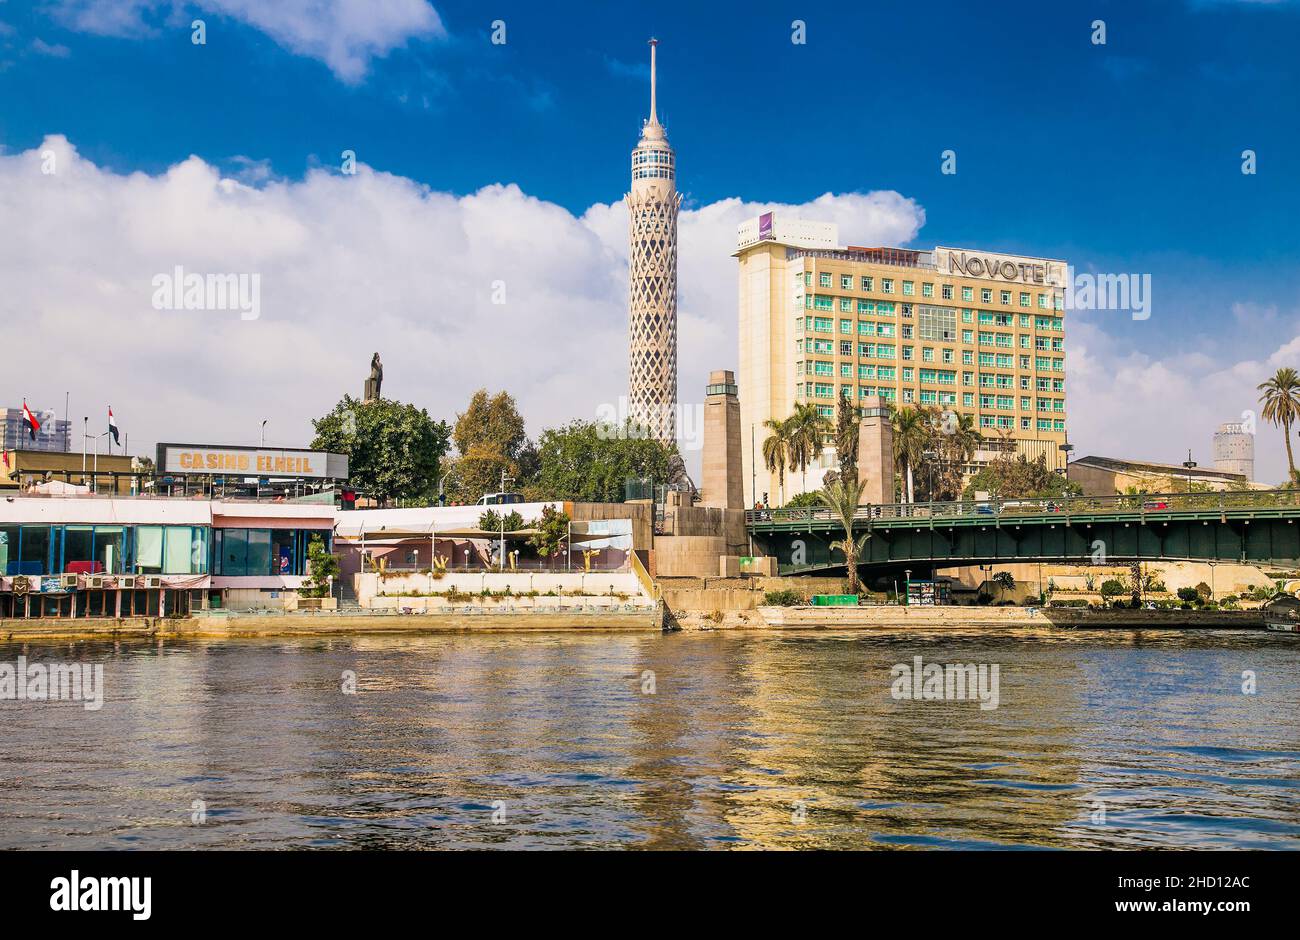 Luxor, Ägypten - 28. Jan 2020: Wohngebäude am Nil mit Segelbooten in Luxor, Ägypten Stockfoto